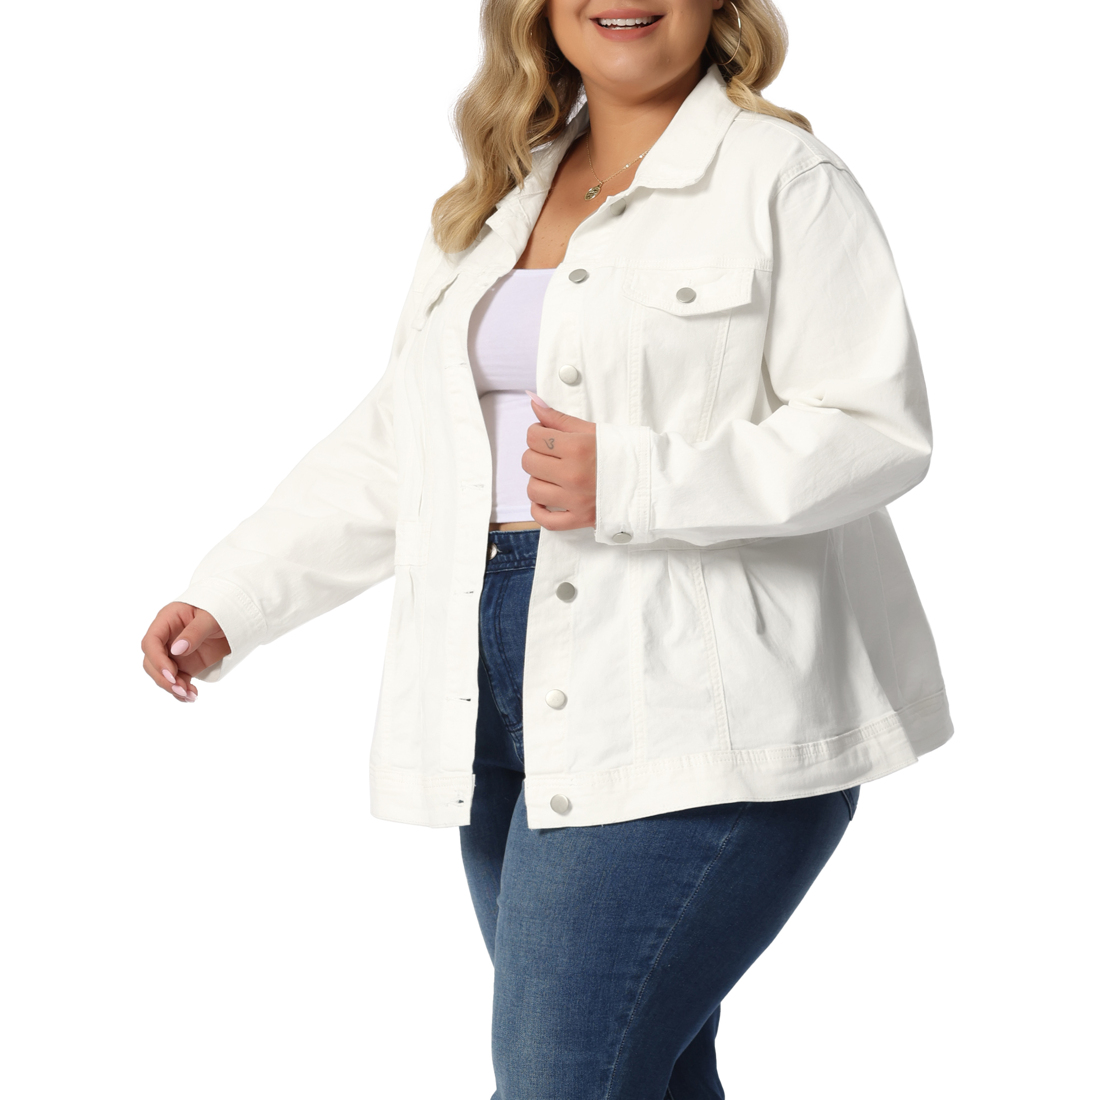 Unique Bargains Agnes Orinda Plus Size Denim Jackets for Women Classic Washed Front Jean Jacket